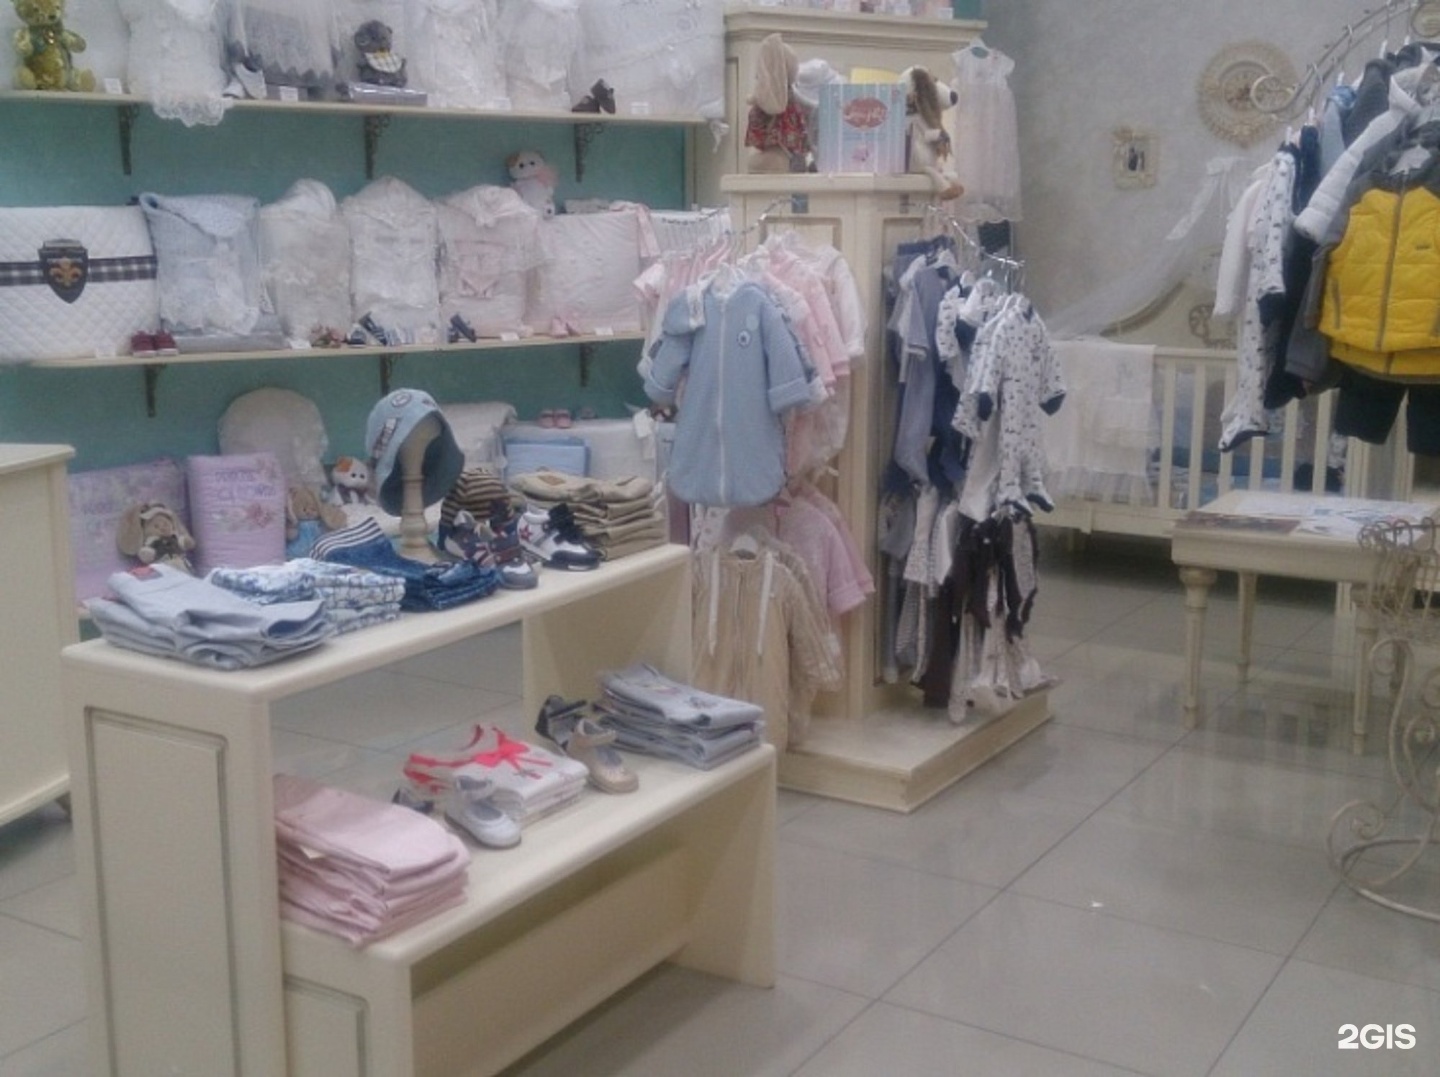 Choupette Интернет Магазин Детской Одежды Москва